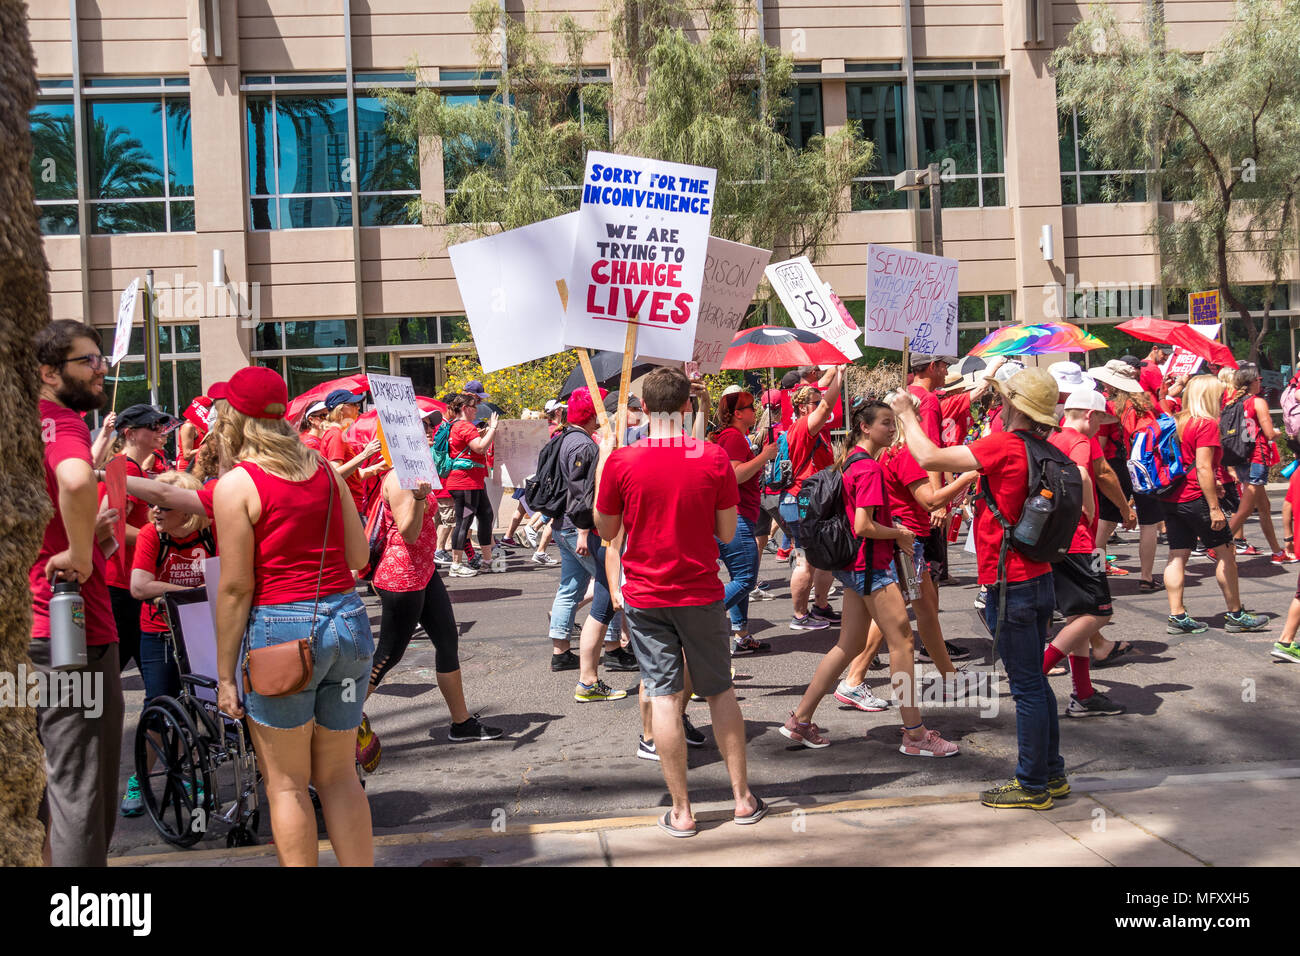 Phoenix, USA, 26 avril 2018, le n° RedForEd - Mars Désolé pour le désagrément, nous essayons de changer des vies. Credit : Michelle Jones - Arizona/Alamy Live News. Banque D'Images